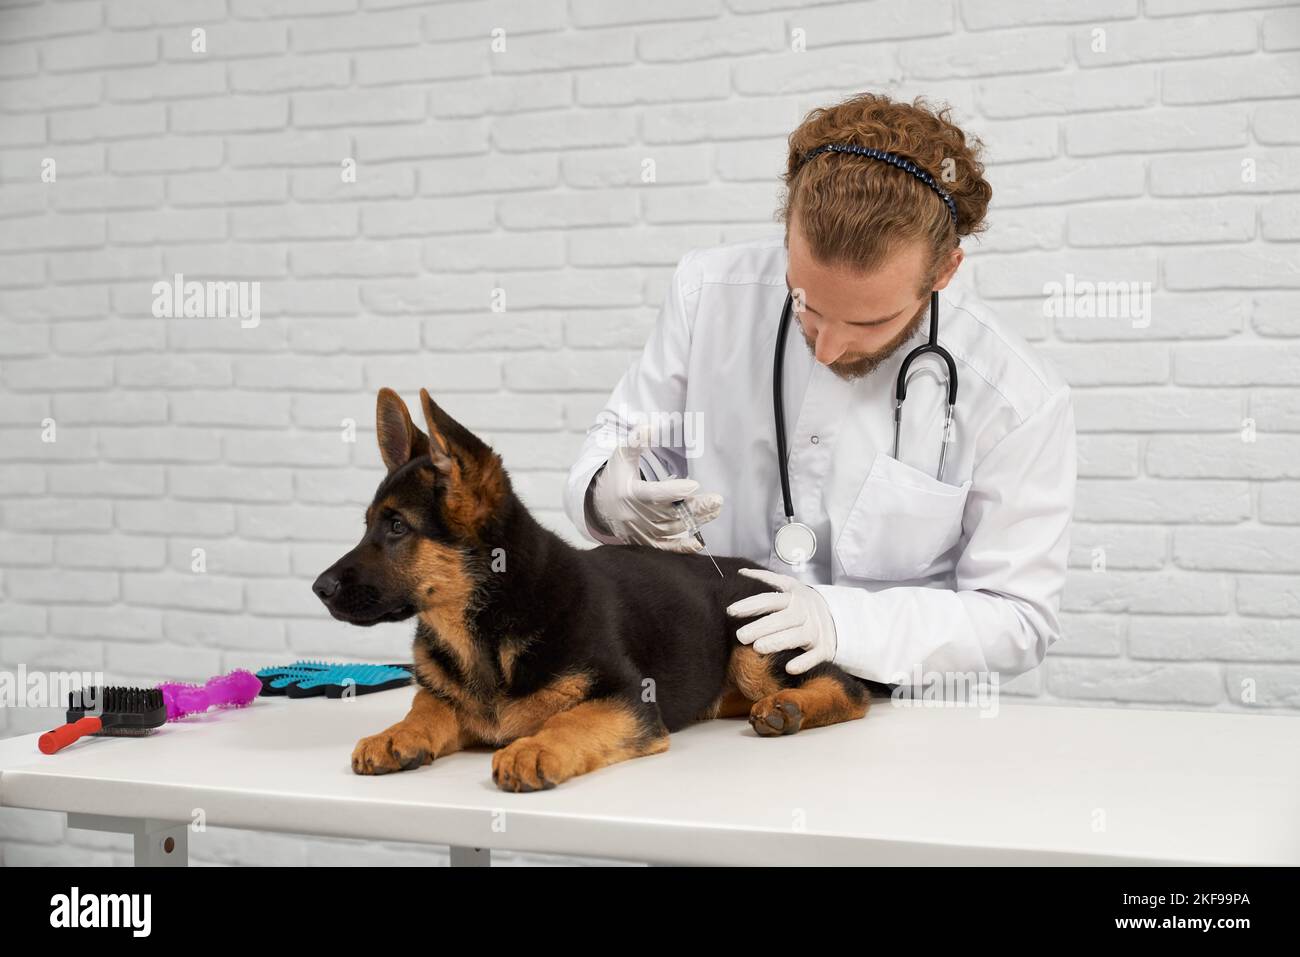 Ritratto di veterinario leale e paziente marrone e nero. Medico animale tenendo saldamente l'anca del cane e trovando il posto per l'iniezione. Visita al veterinario in arrivo per concludere con successo. Foto Stock